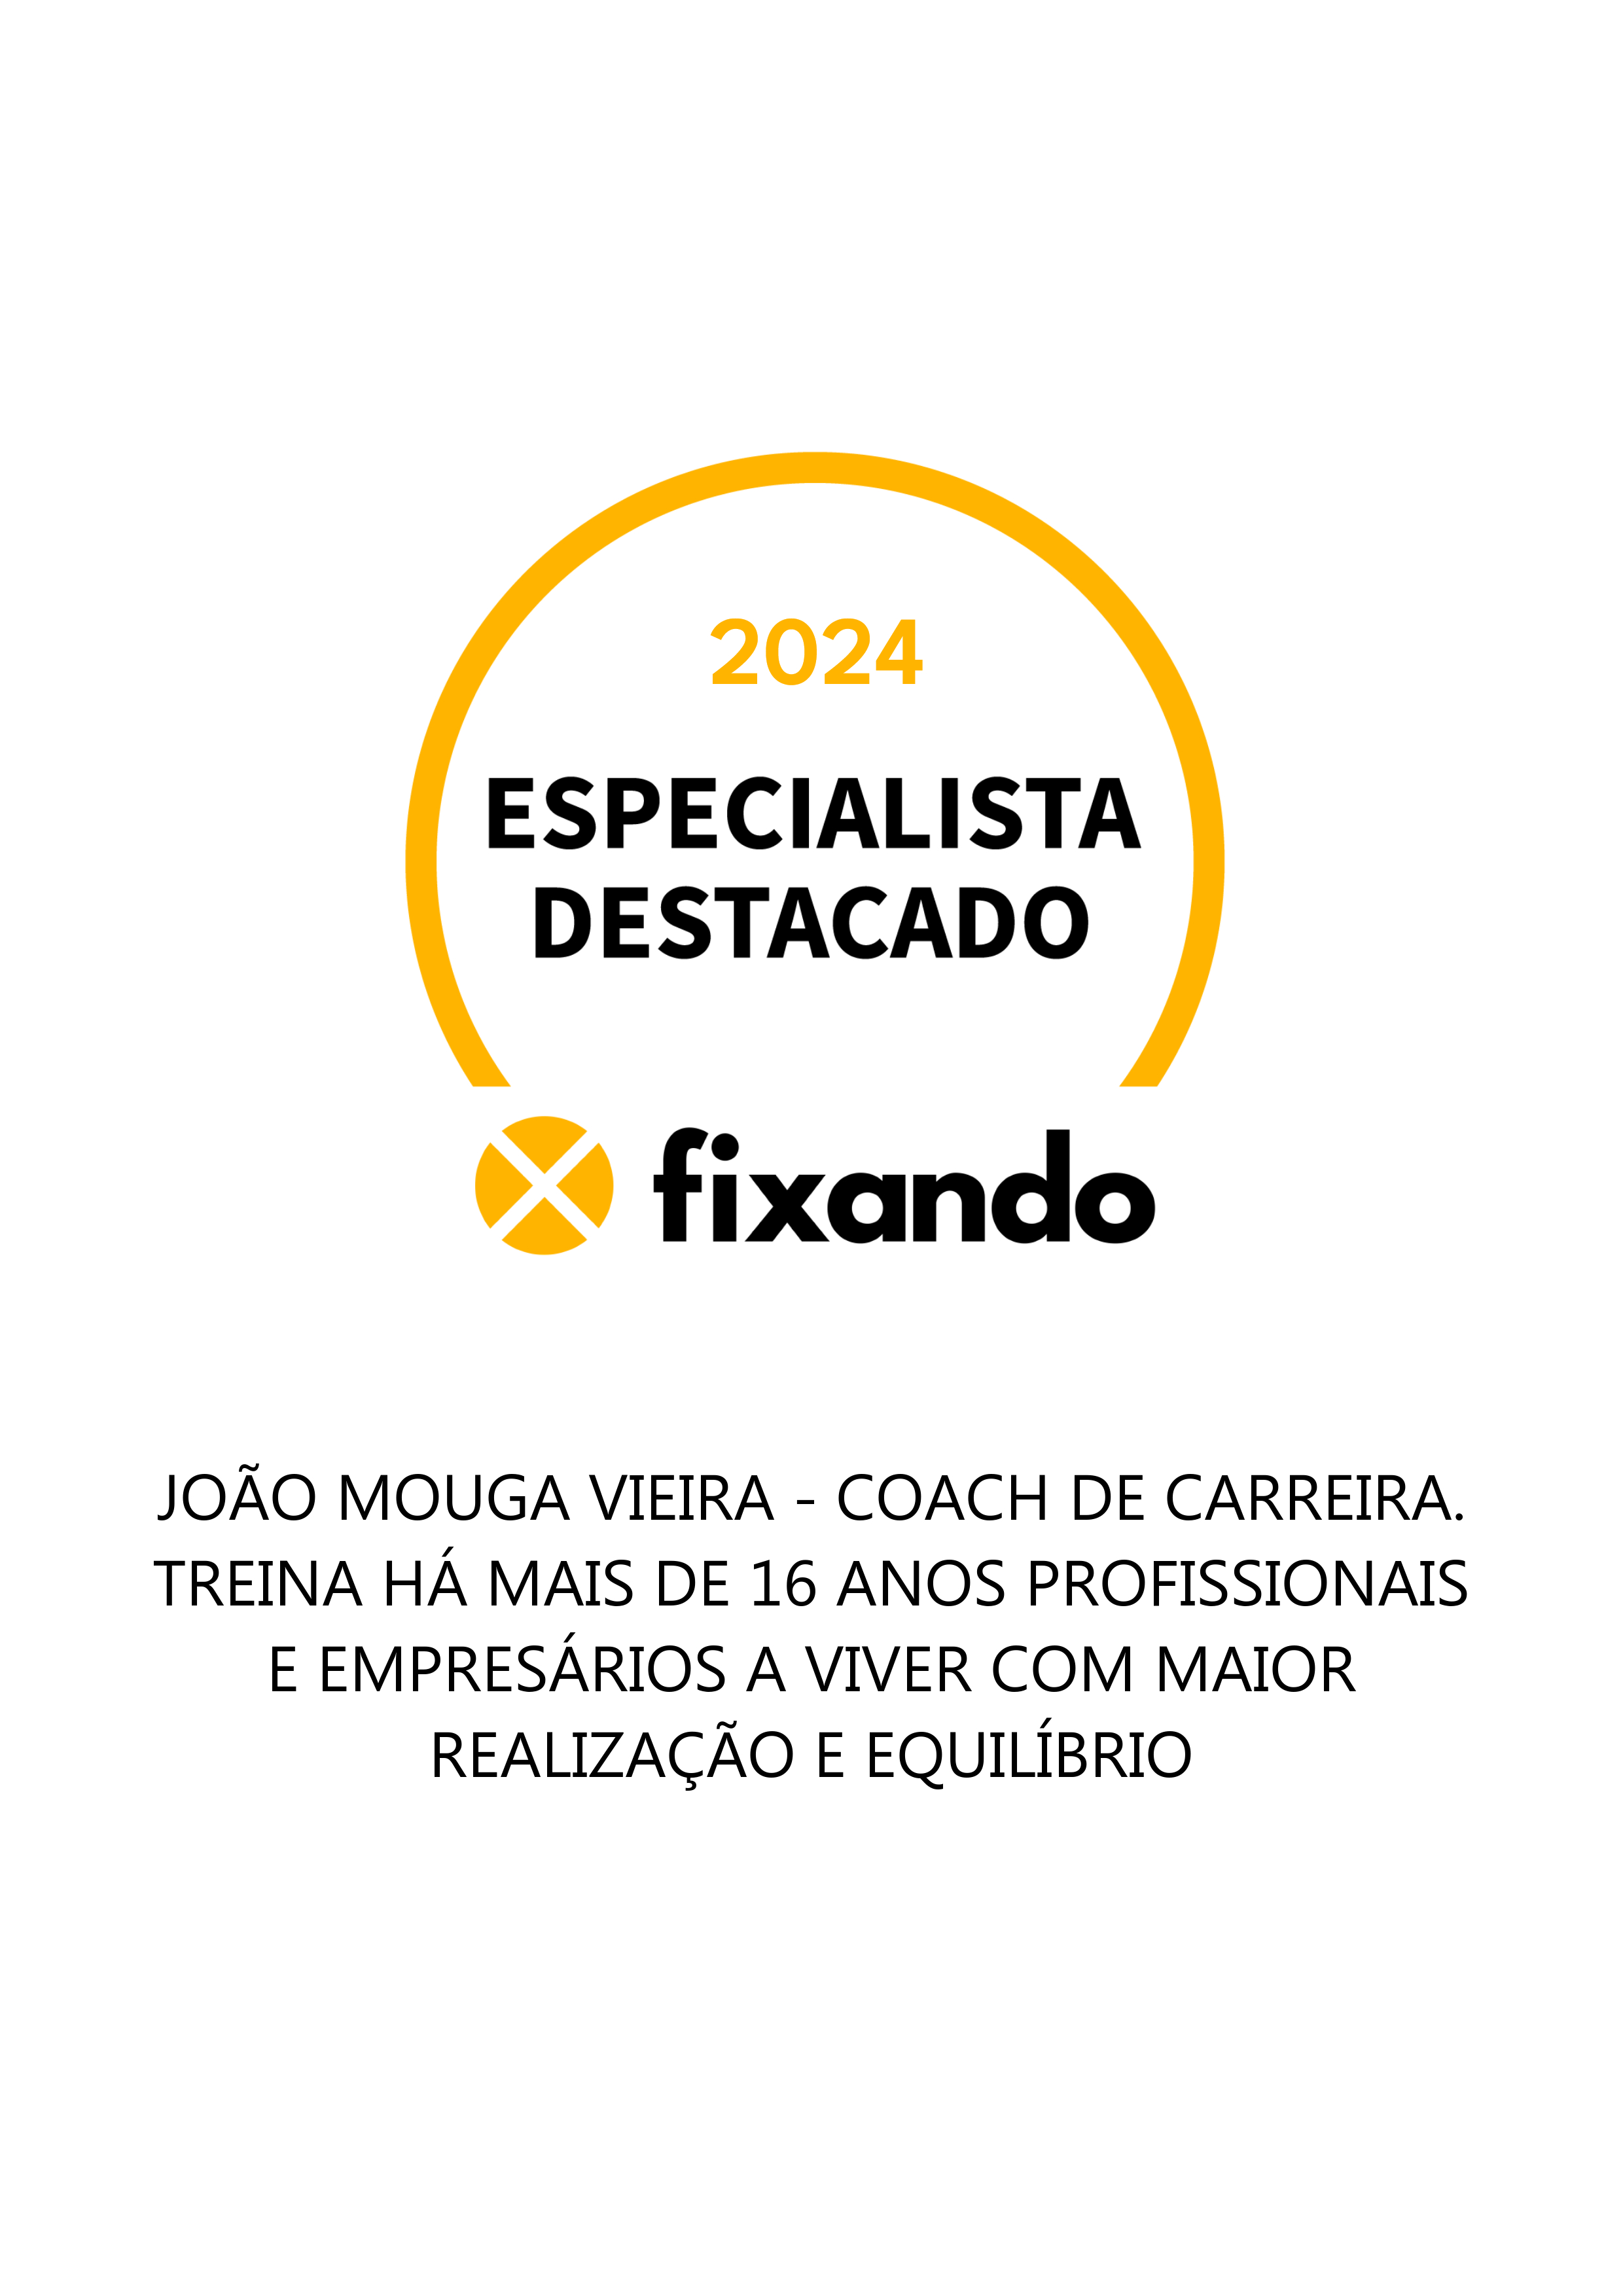 João Mouga Vieira - coach de carreira. Treina há mais de 16 anos profissionais e empresários a viver com maior realização e equilíbrio - Lisboa - Coaching Pessoal